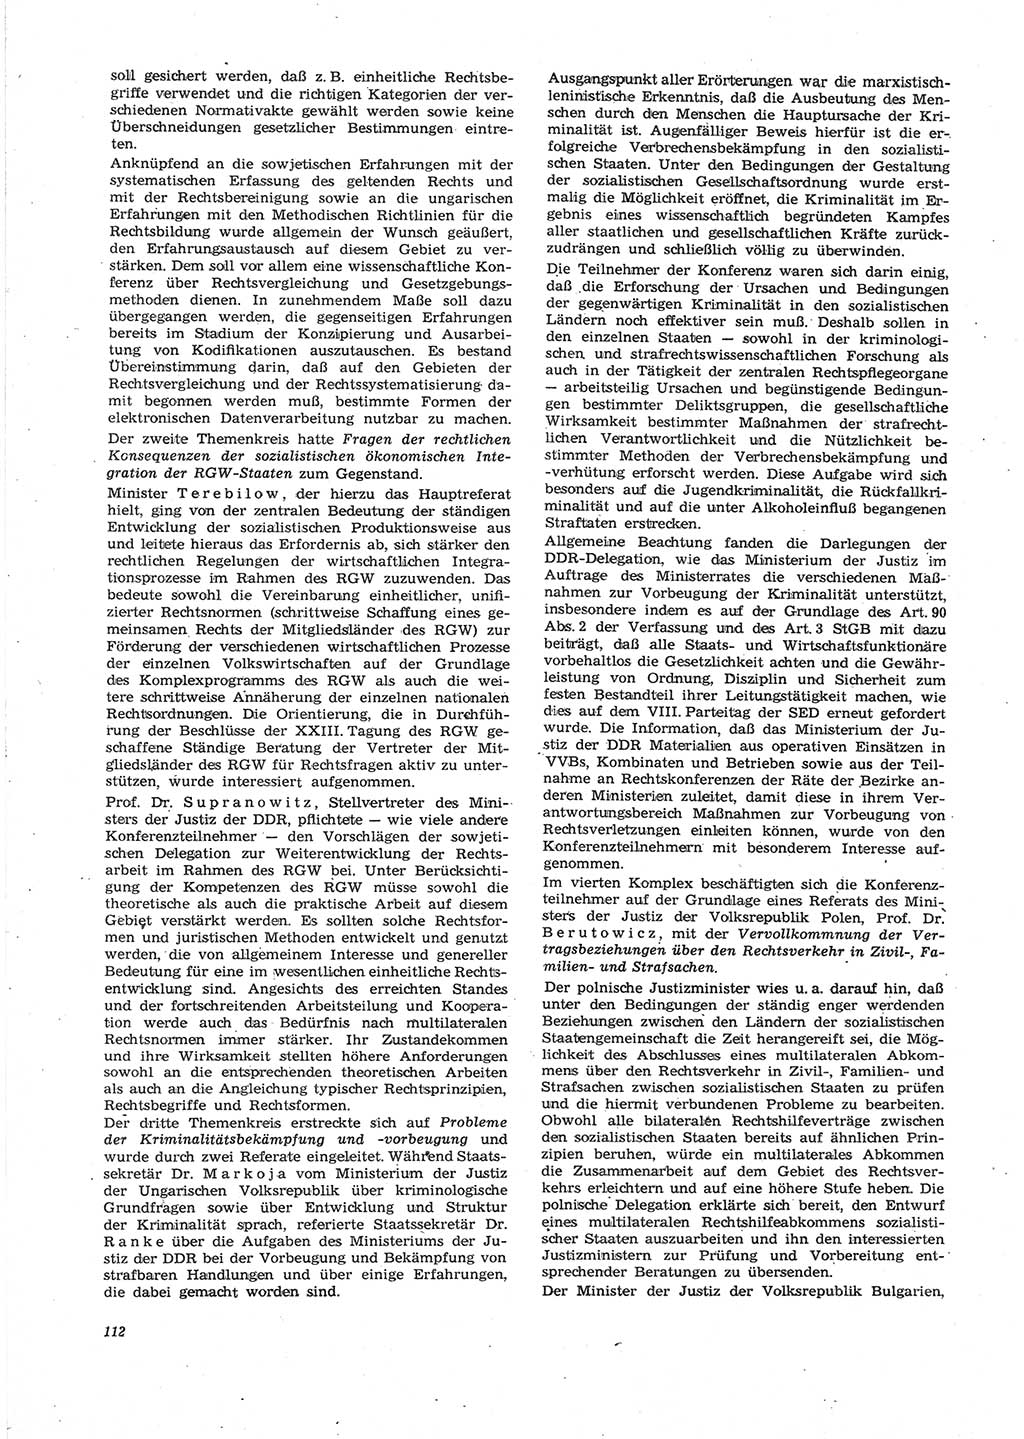 Neue Justiz (NJ), Zeitschrift für Recht und Rechtswissenschaft [Deutsche Demokratische Republik (DDR)], 27. Jahrgang 1973, Seite 112 (NJ DDR 1973, S. 112)